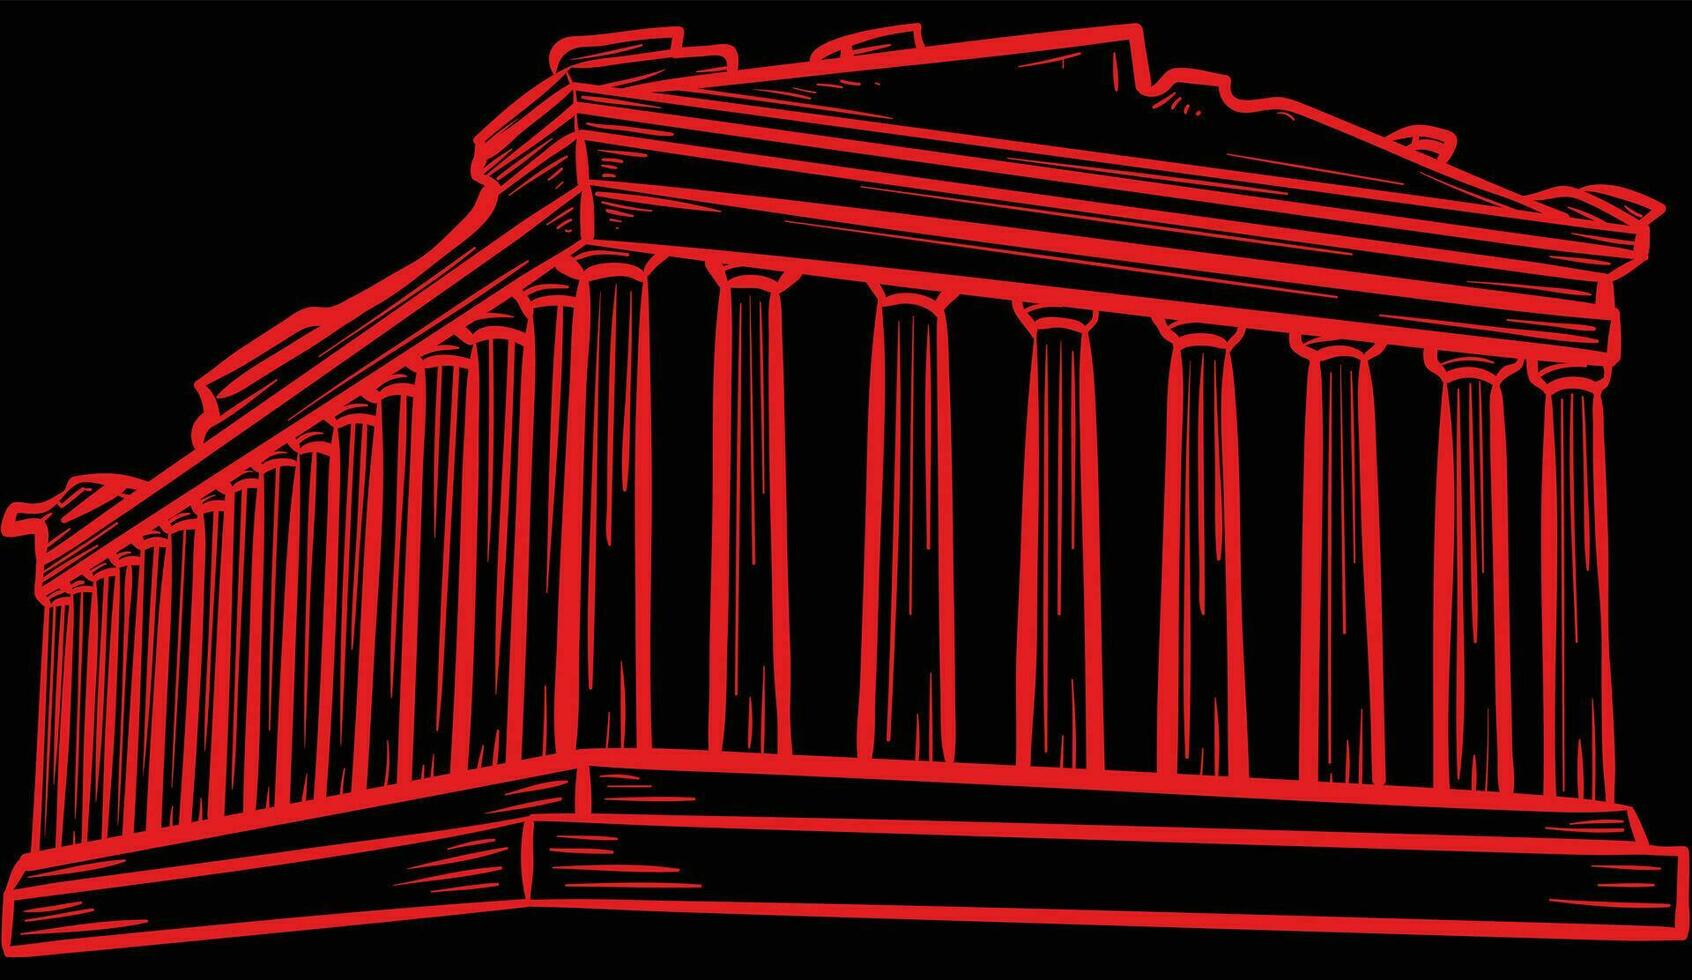 acrópolis de Atenas ilustración vector